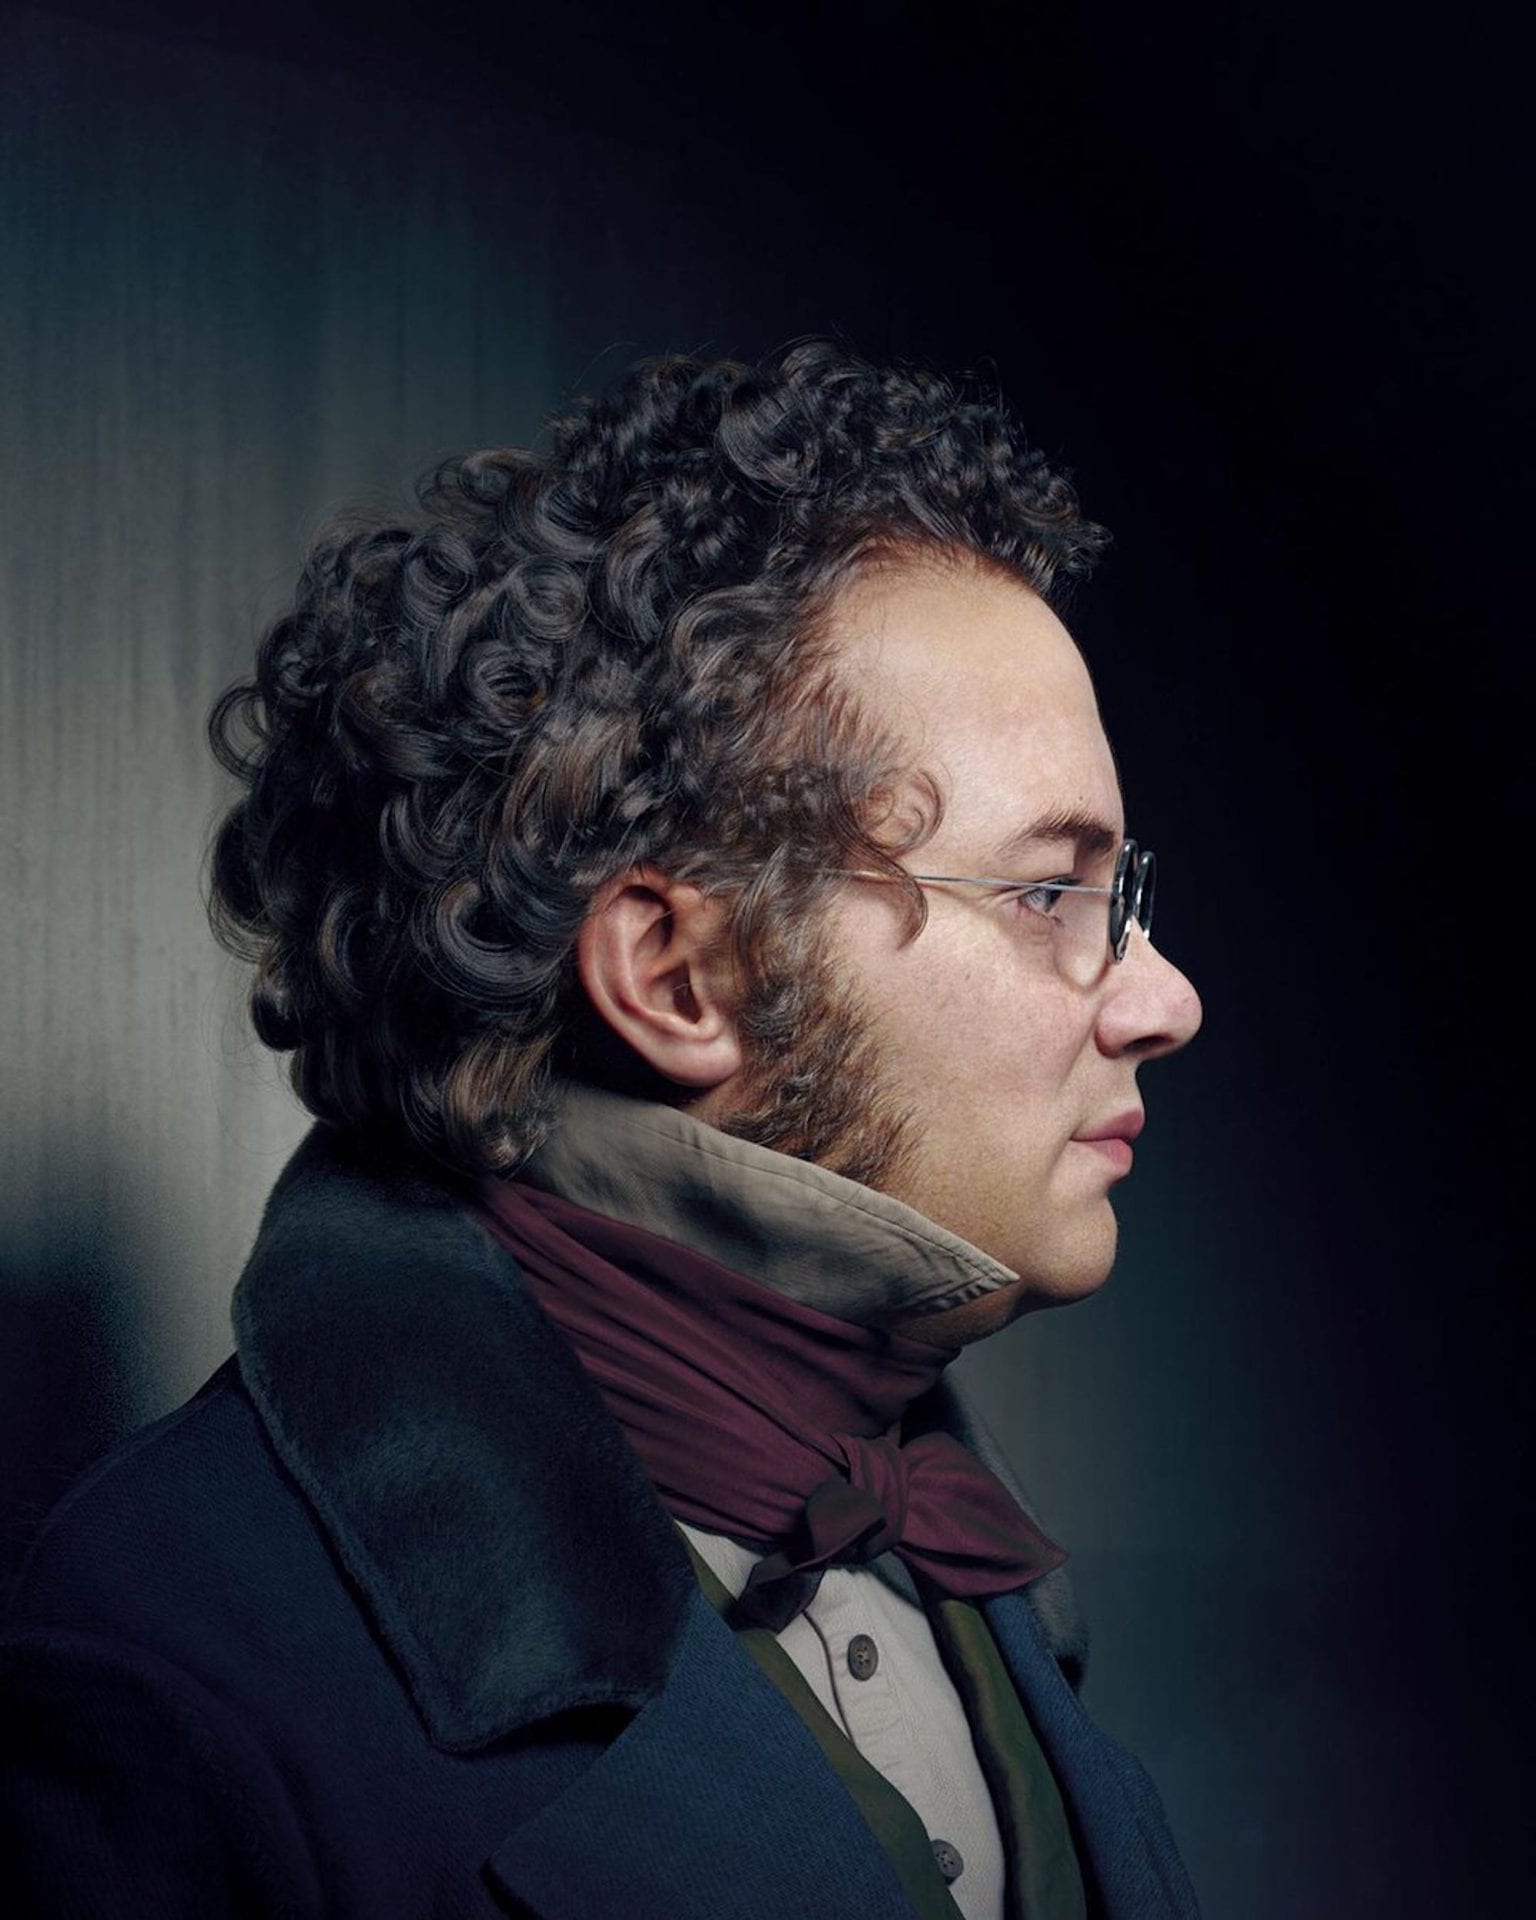 L'artiste Hadi Karimi redonne vie aux compositeurs célèbres avec des portraits 3D